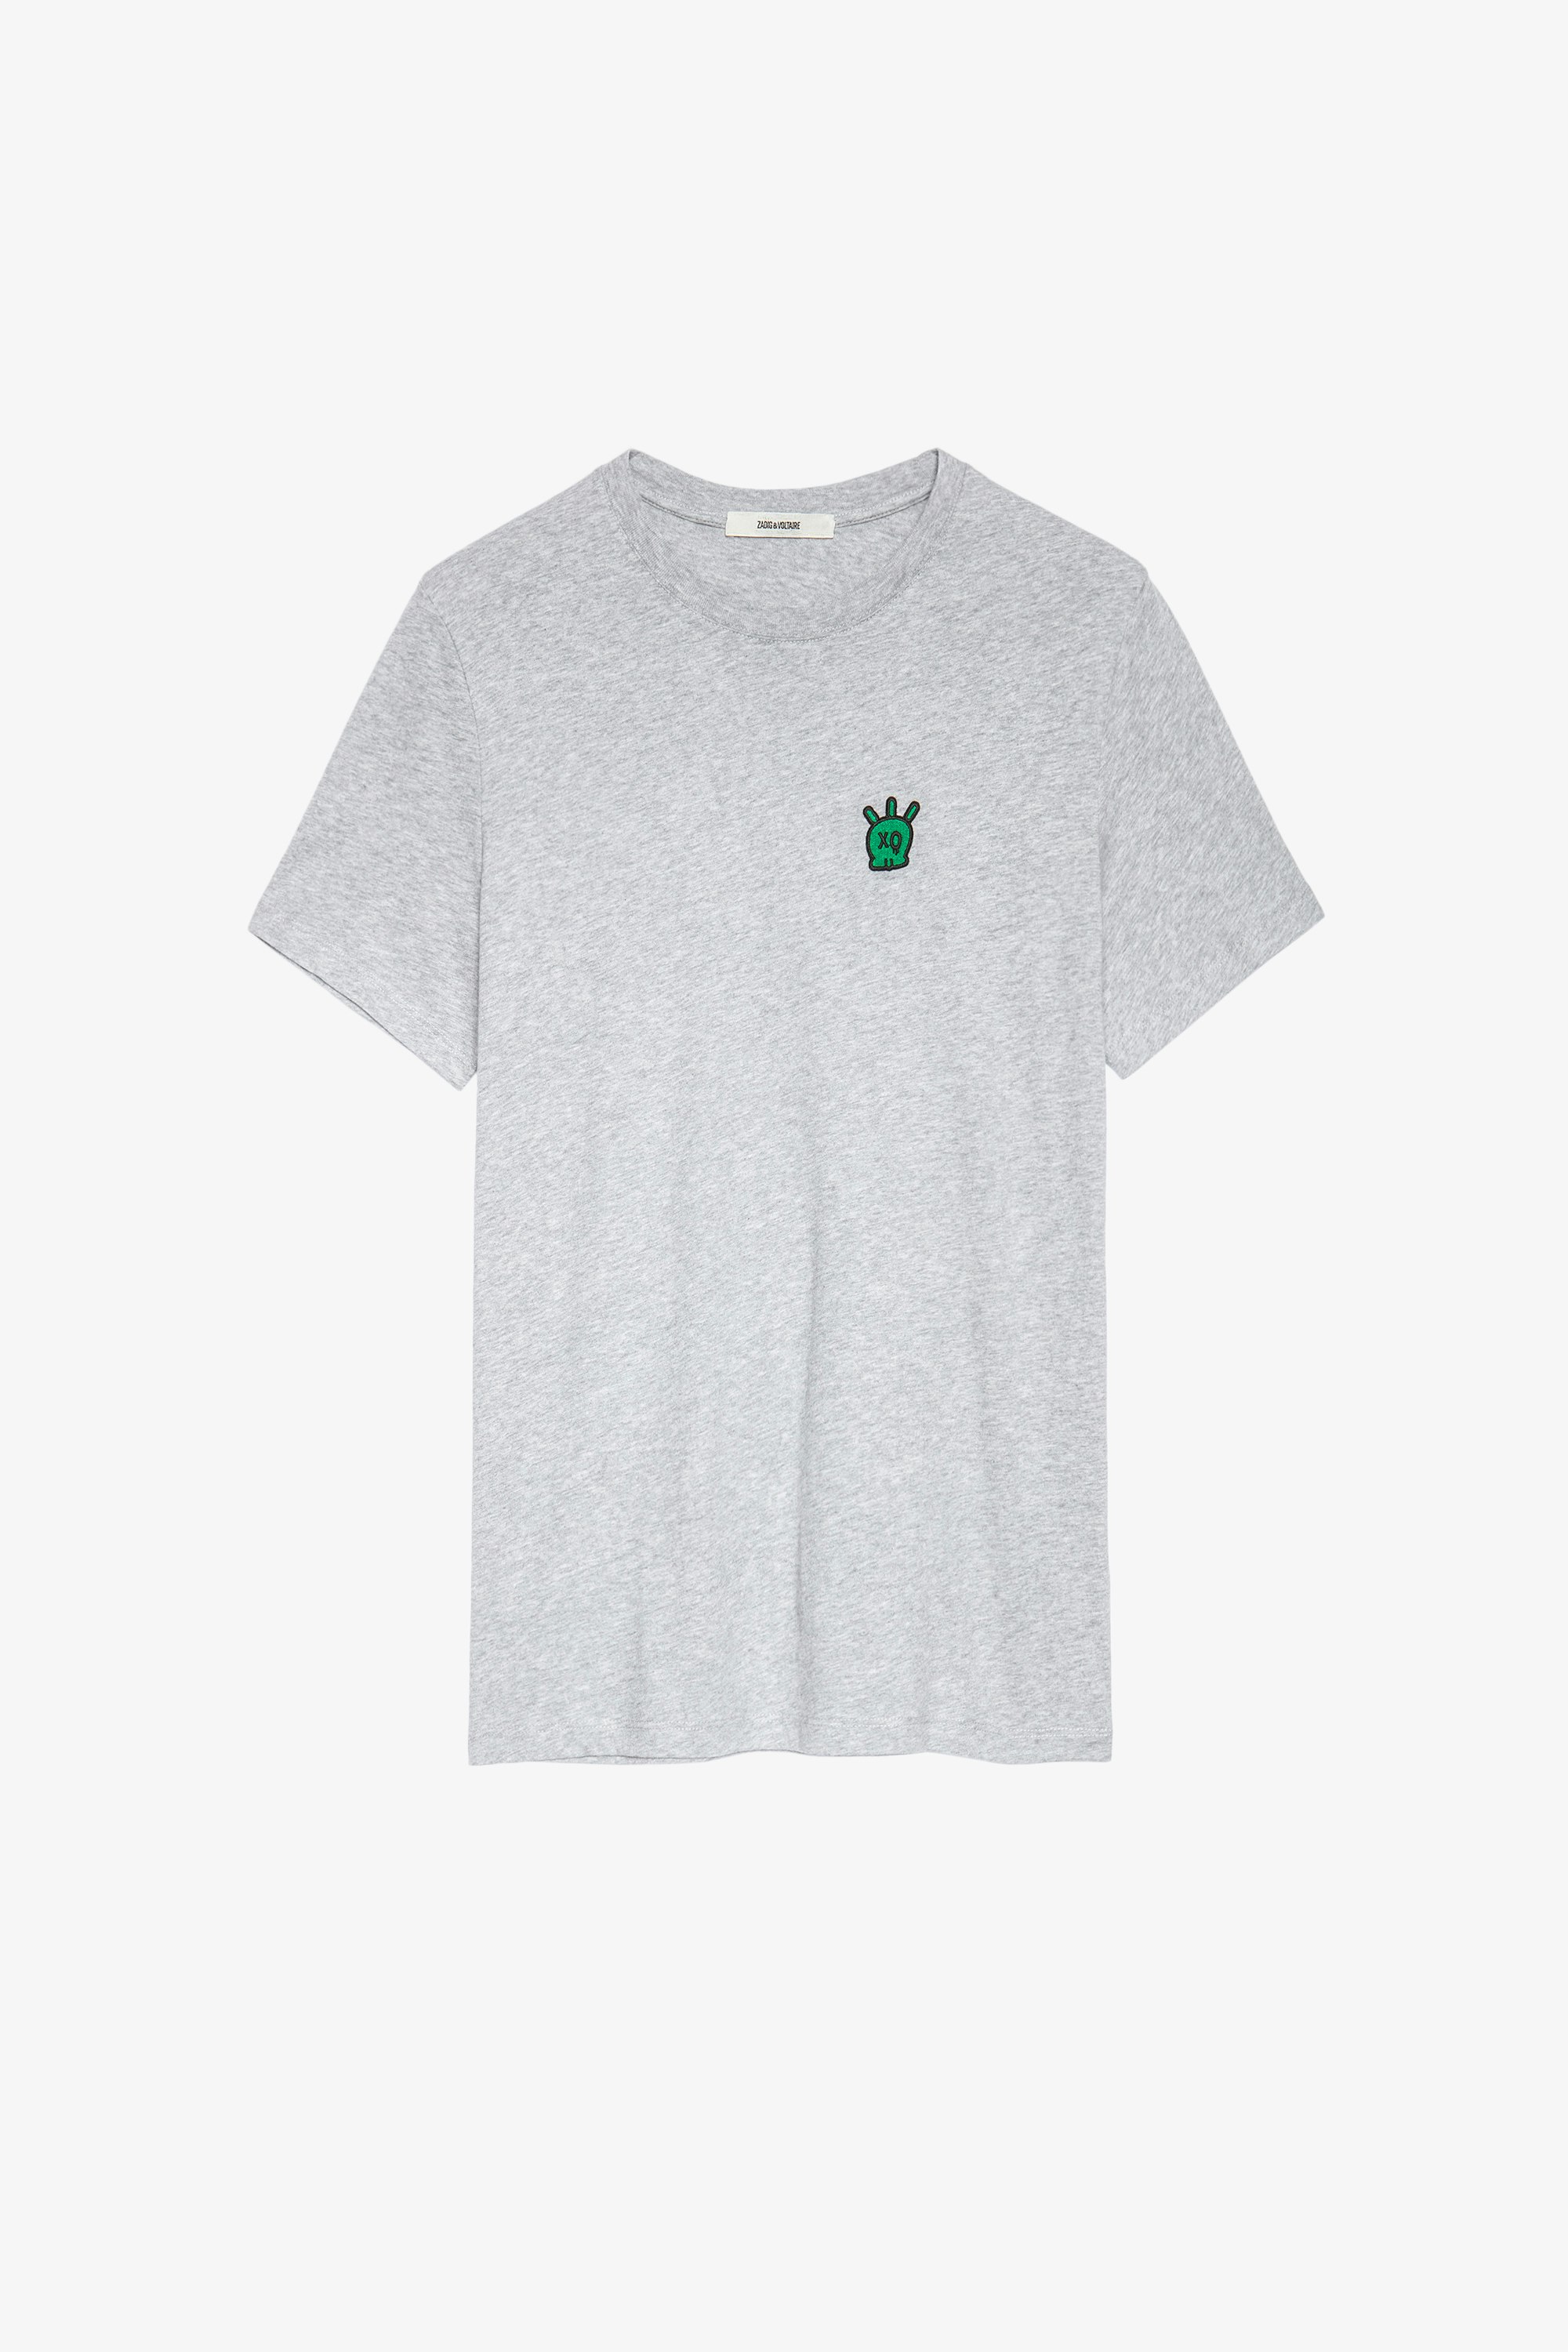 T-shirt Tommy Skull T-shirt in cotone grigio screziato con patch a teschio uomo. Questo prodotto é certificato GOTS e realizzato con fibre provenienti da agricoltura biologica